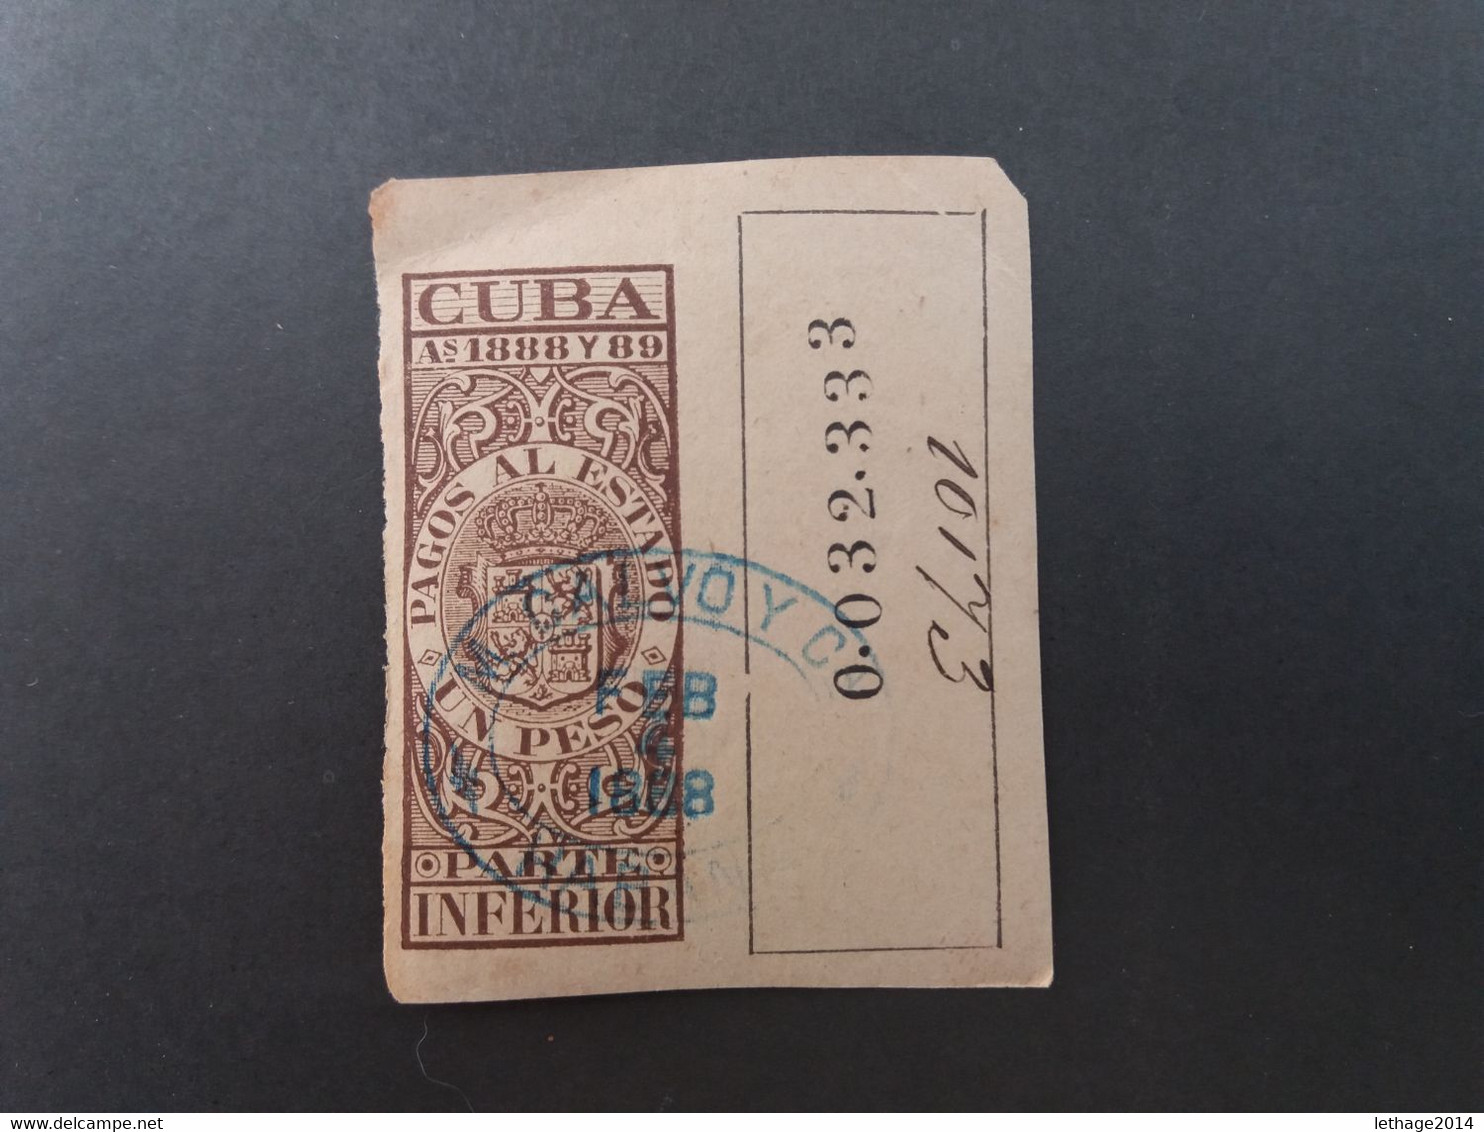 STAMPS CUBA 1888  "Pagos Al Estado " Fiscal Stamps For Telegraphs. - Telegraphenmarken